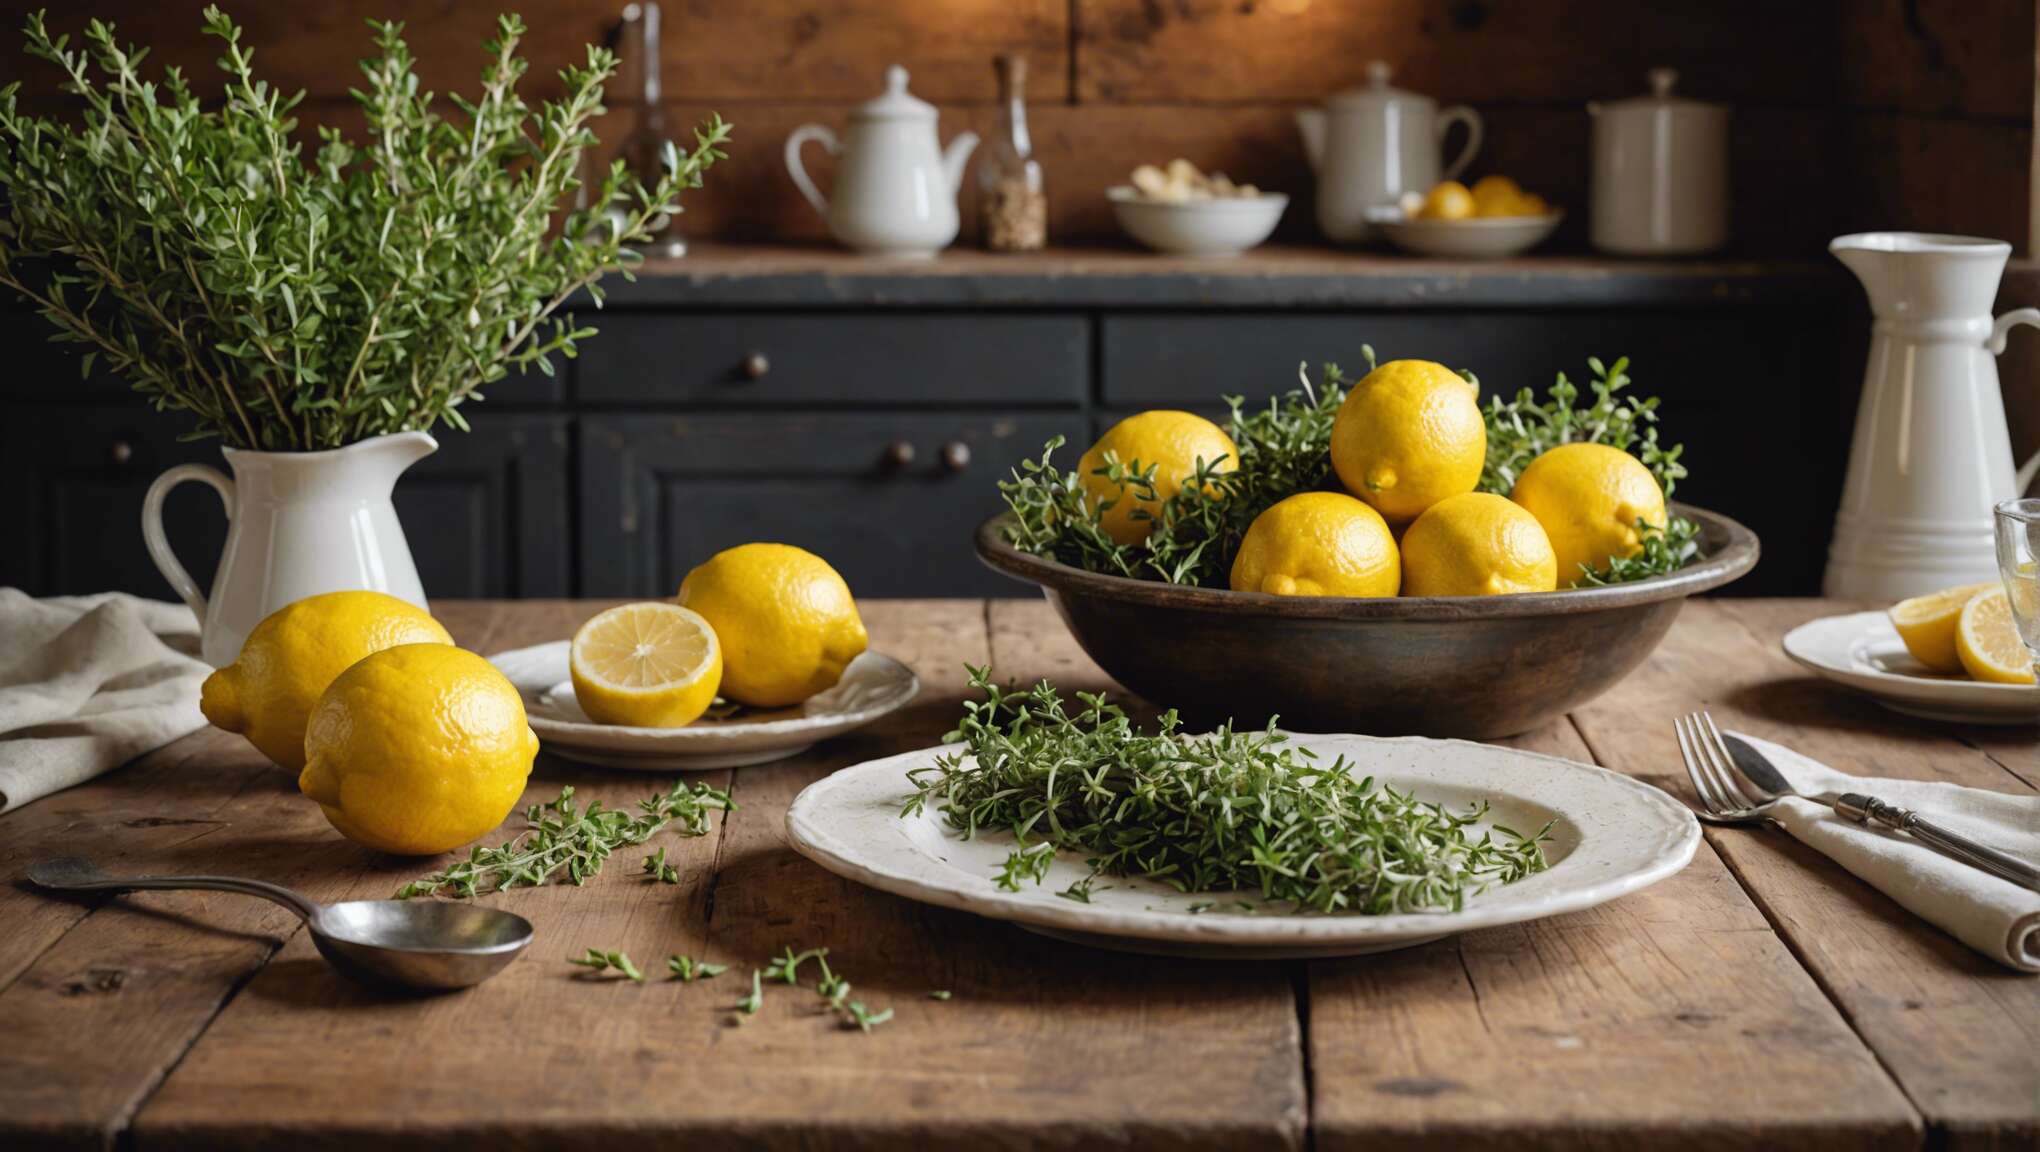 Utilisations culinaires du thym citronné : une touche d'agrume dans votre cuisine